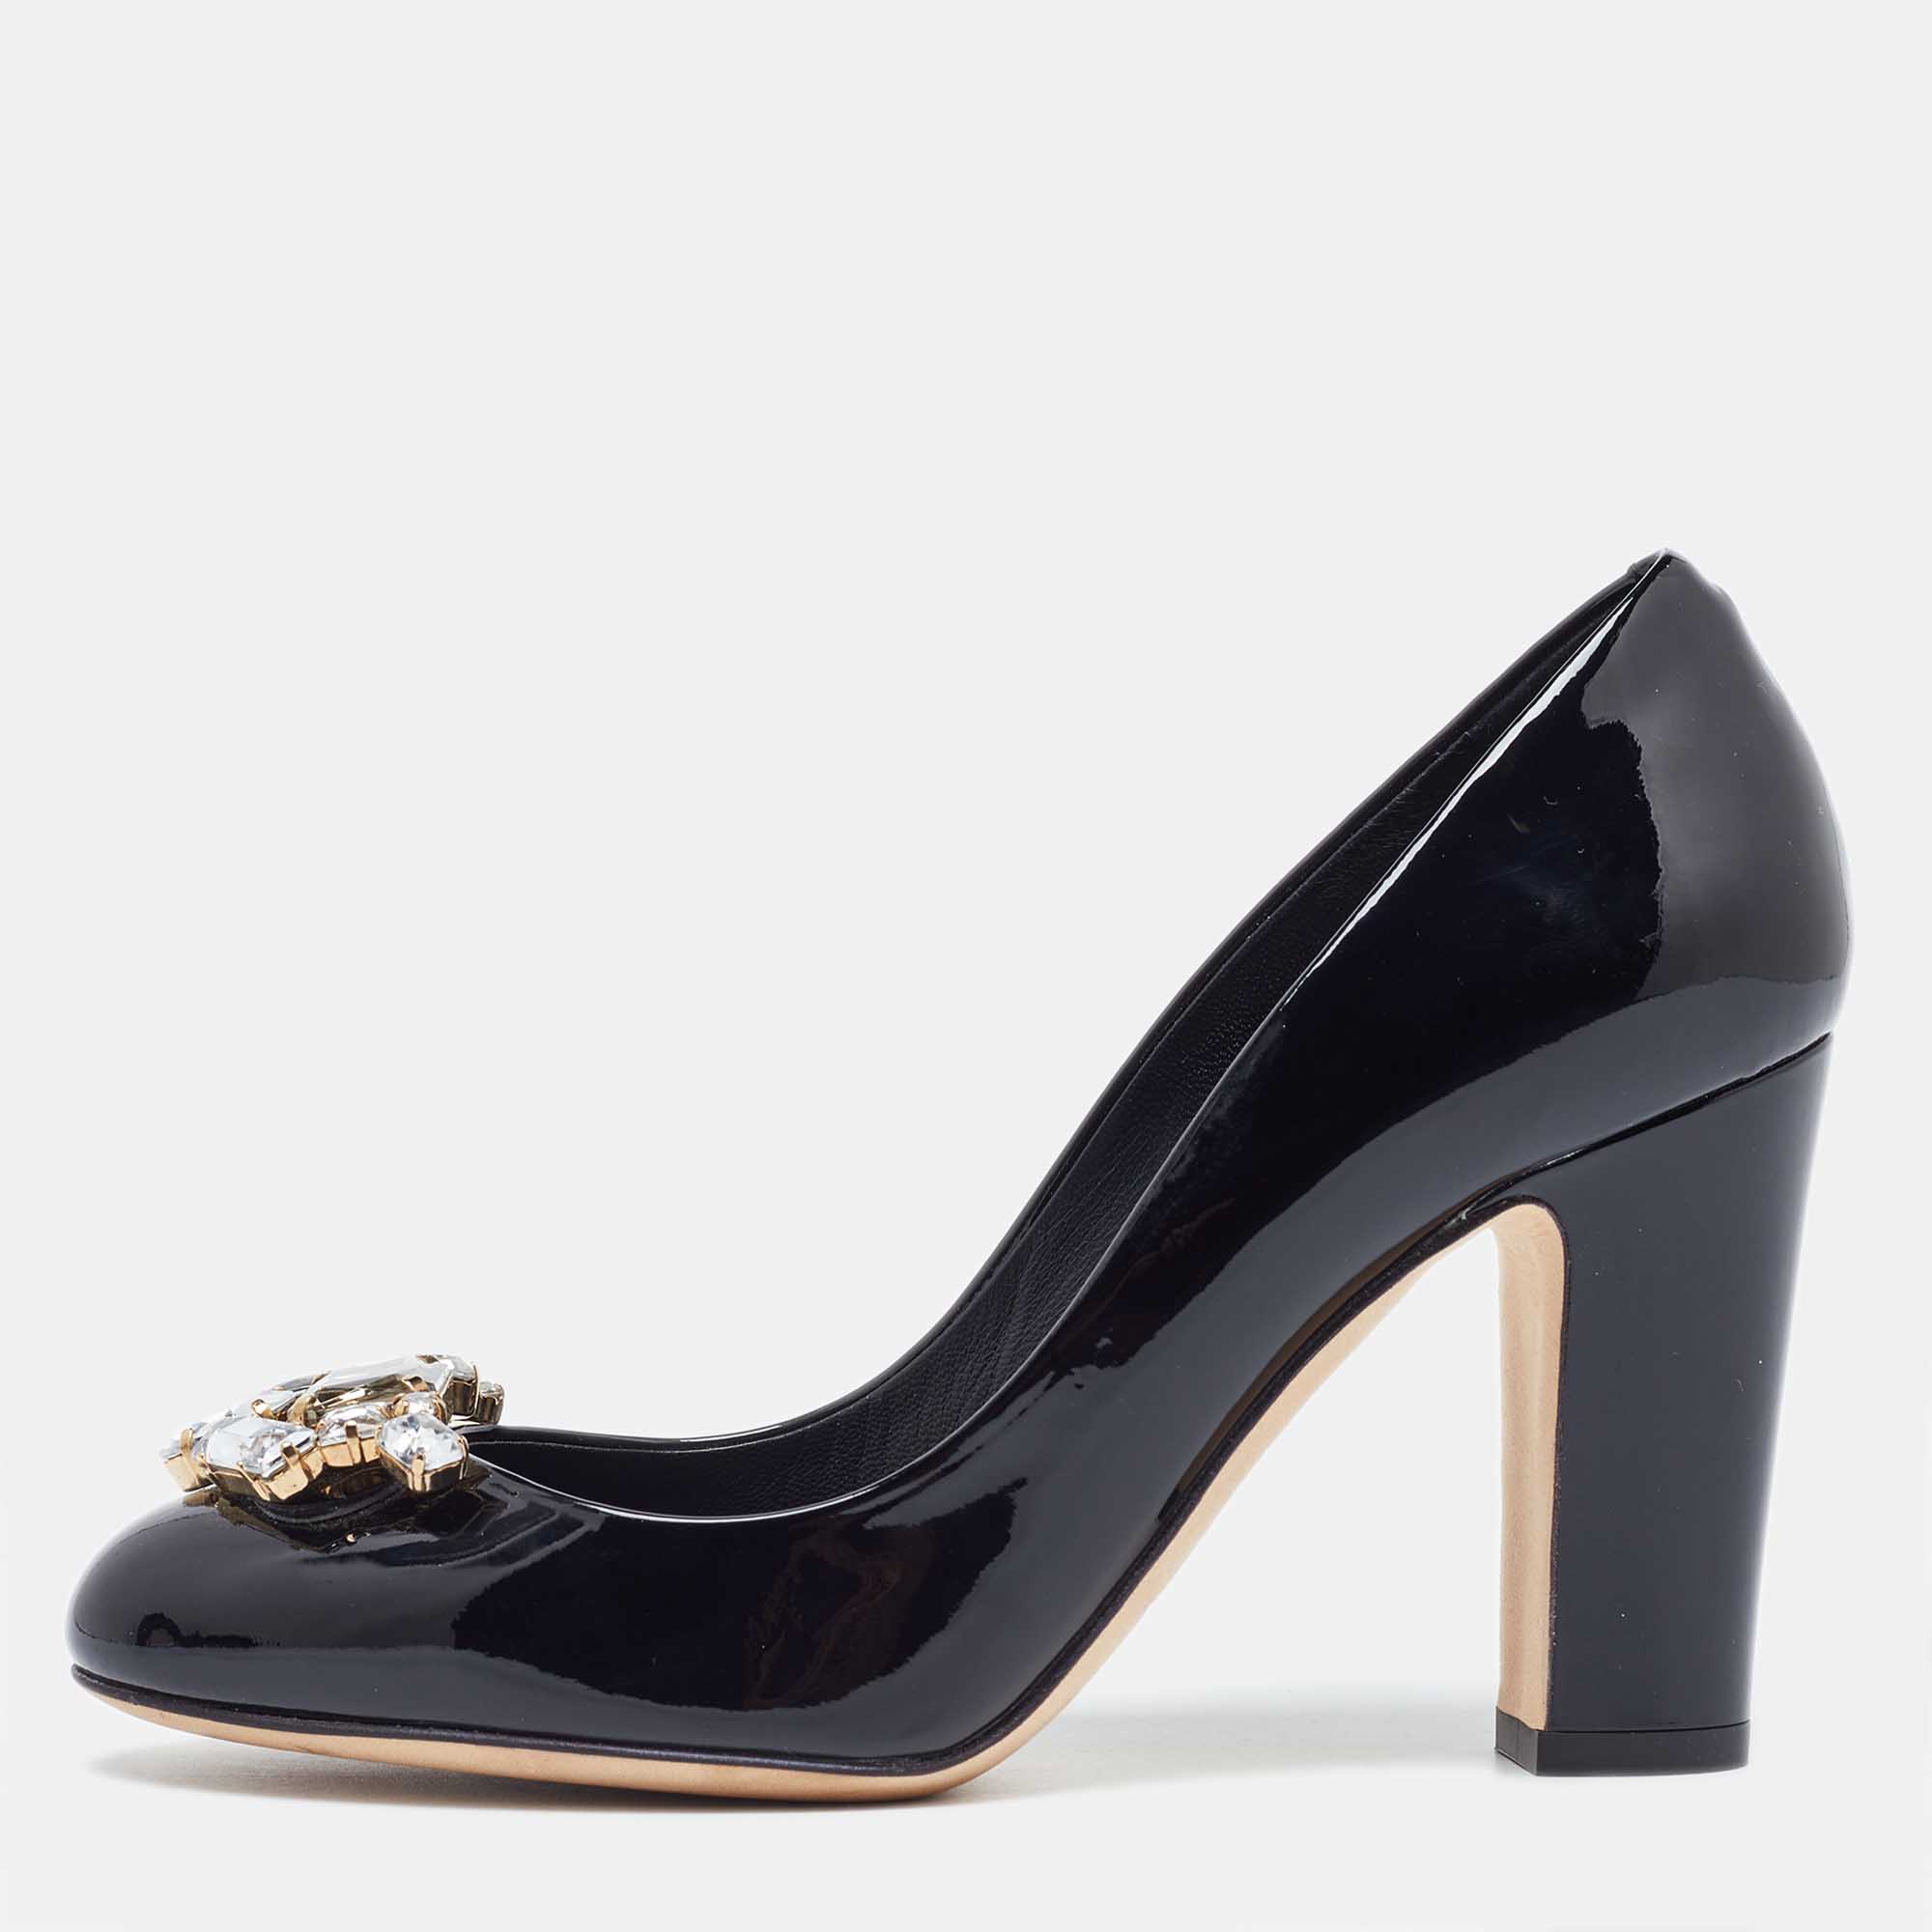 Dolce & gabbana black patent leather crystal embellished block heel pumps size 36.5